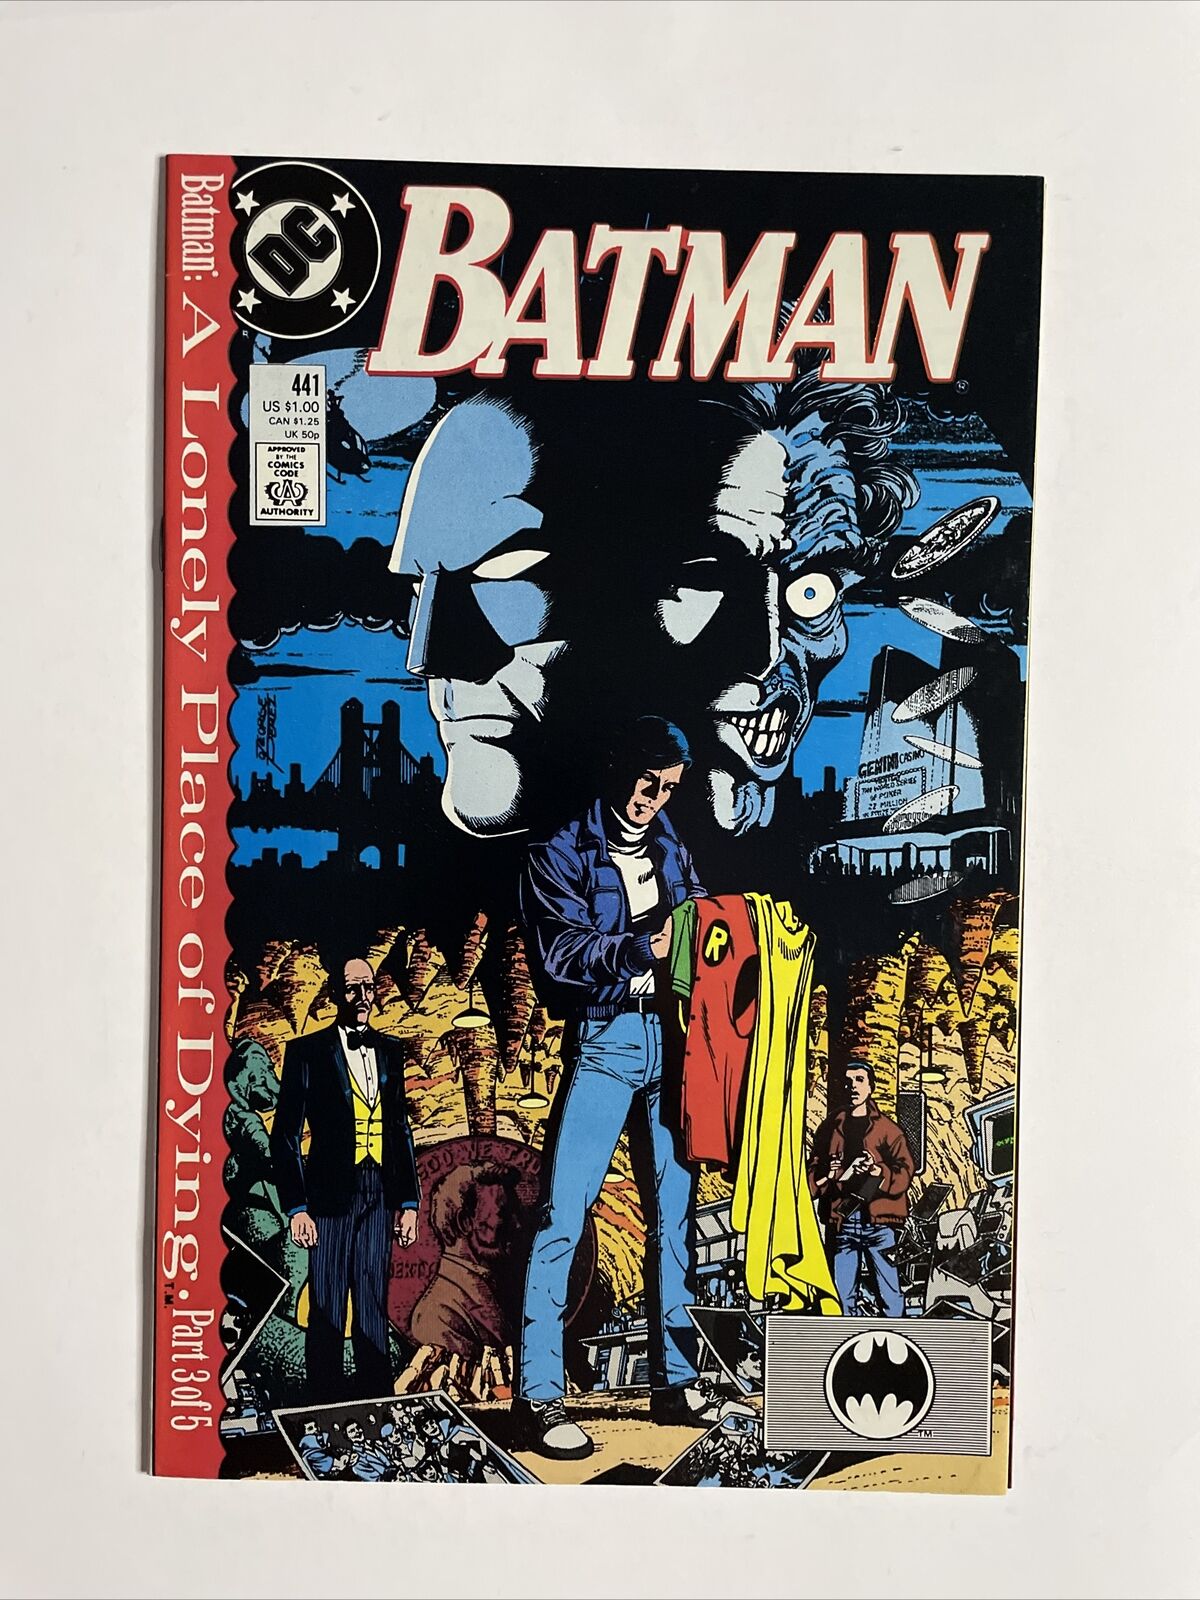 Batman #441 (Nov 1989, DC) 9.0 NM High Grade Comic Book Tim Drake As Robin